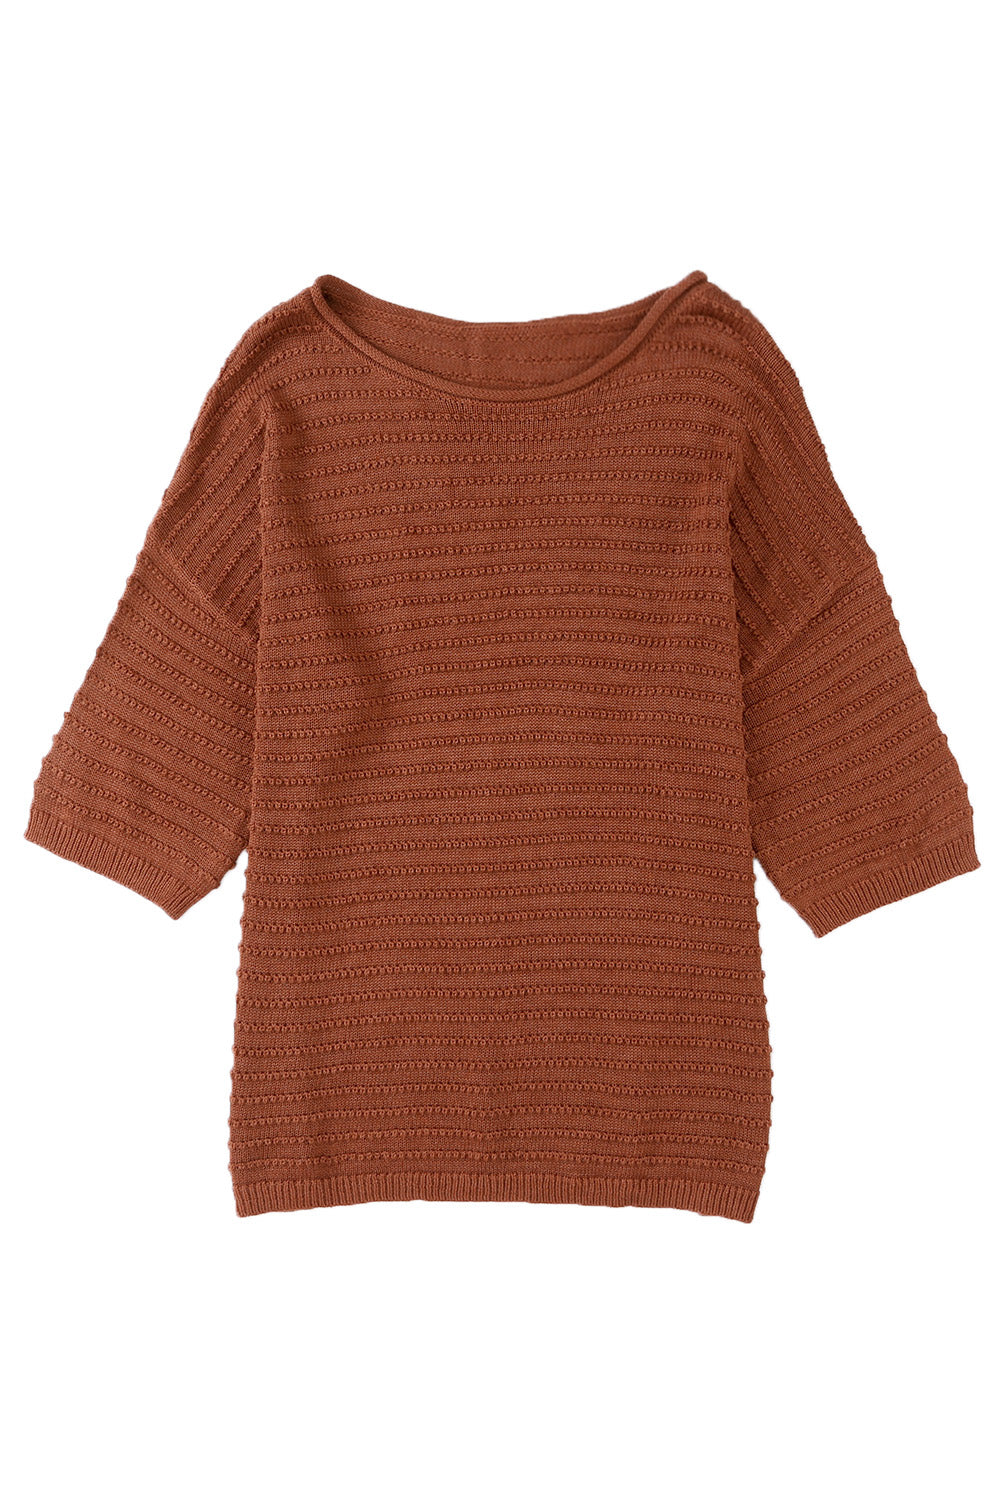 T-shirt à épaules tombantes en tricot texturé abricot